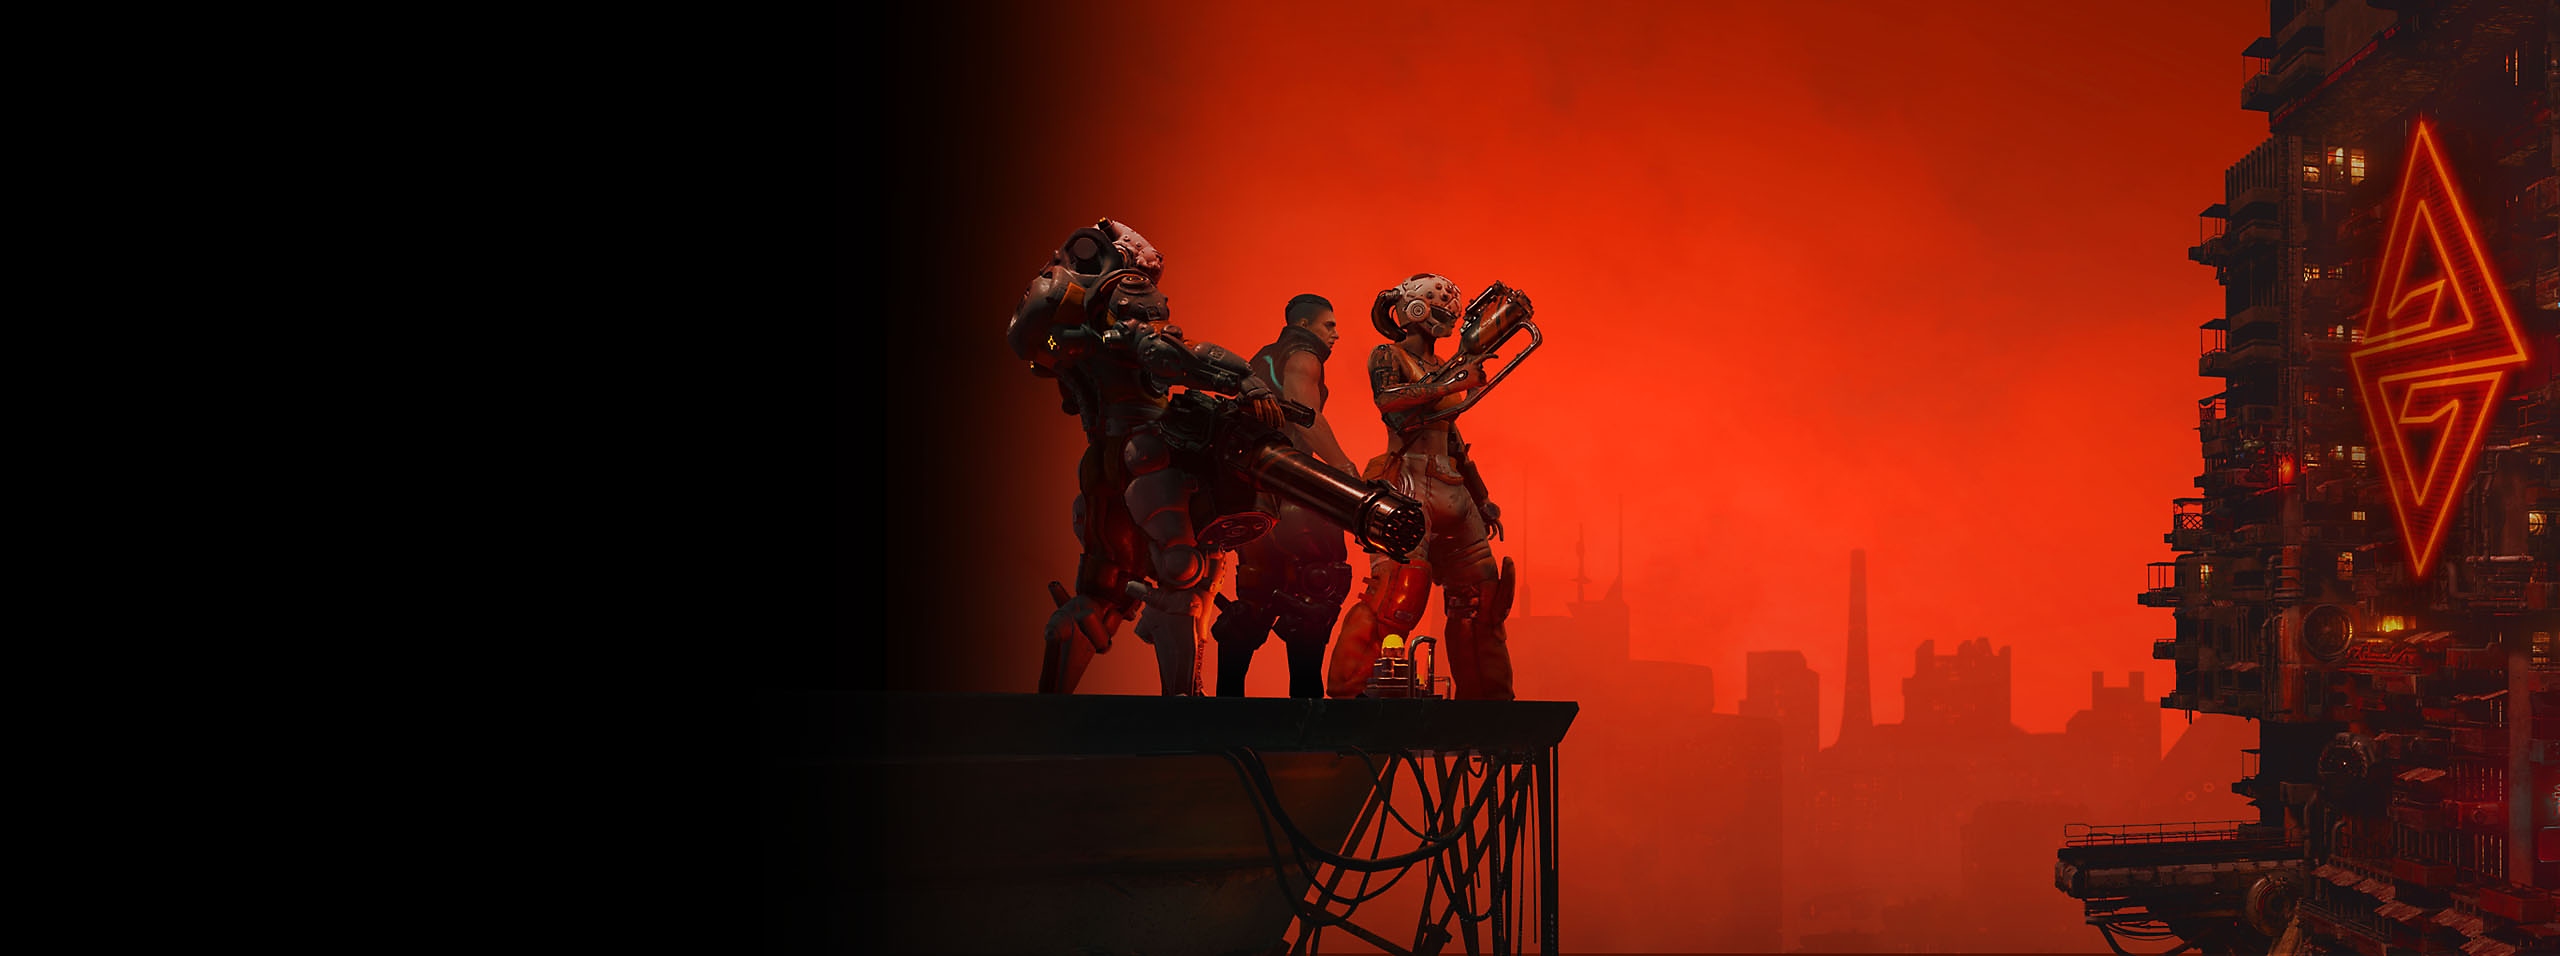 The Ascent -kuvitus, jossa on kolme hahmoa ja kaupungin siluetti punaista taivasta vasten 